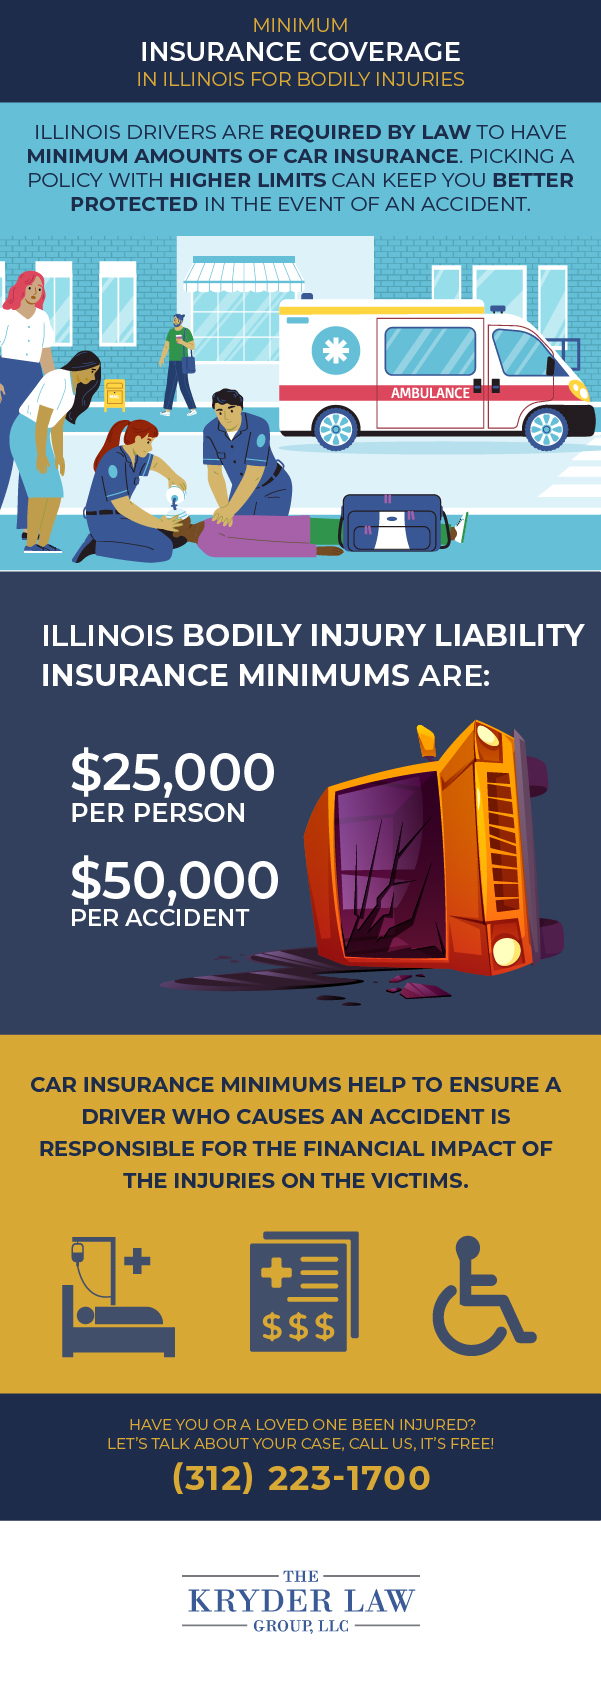 Cobertura mínima de seguro en Illinois para lesiones corporales